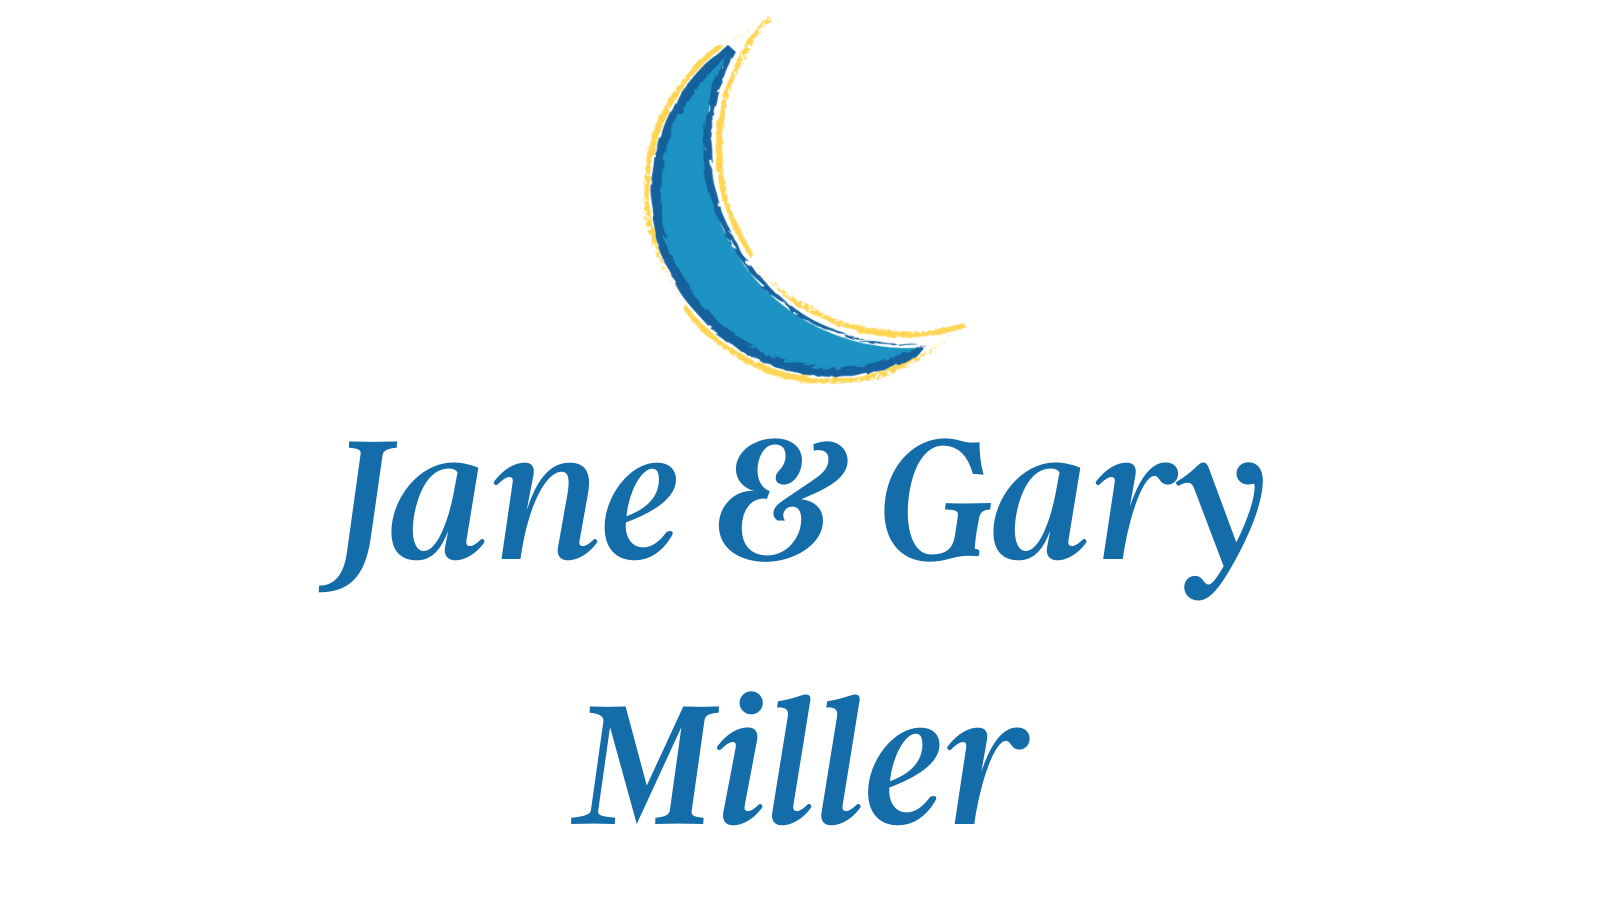 Jane & Gary Miller 